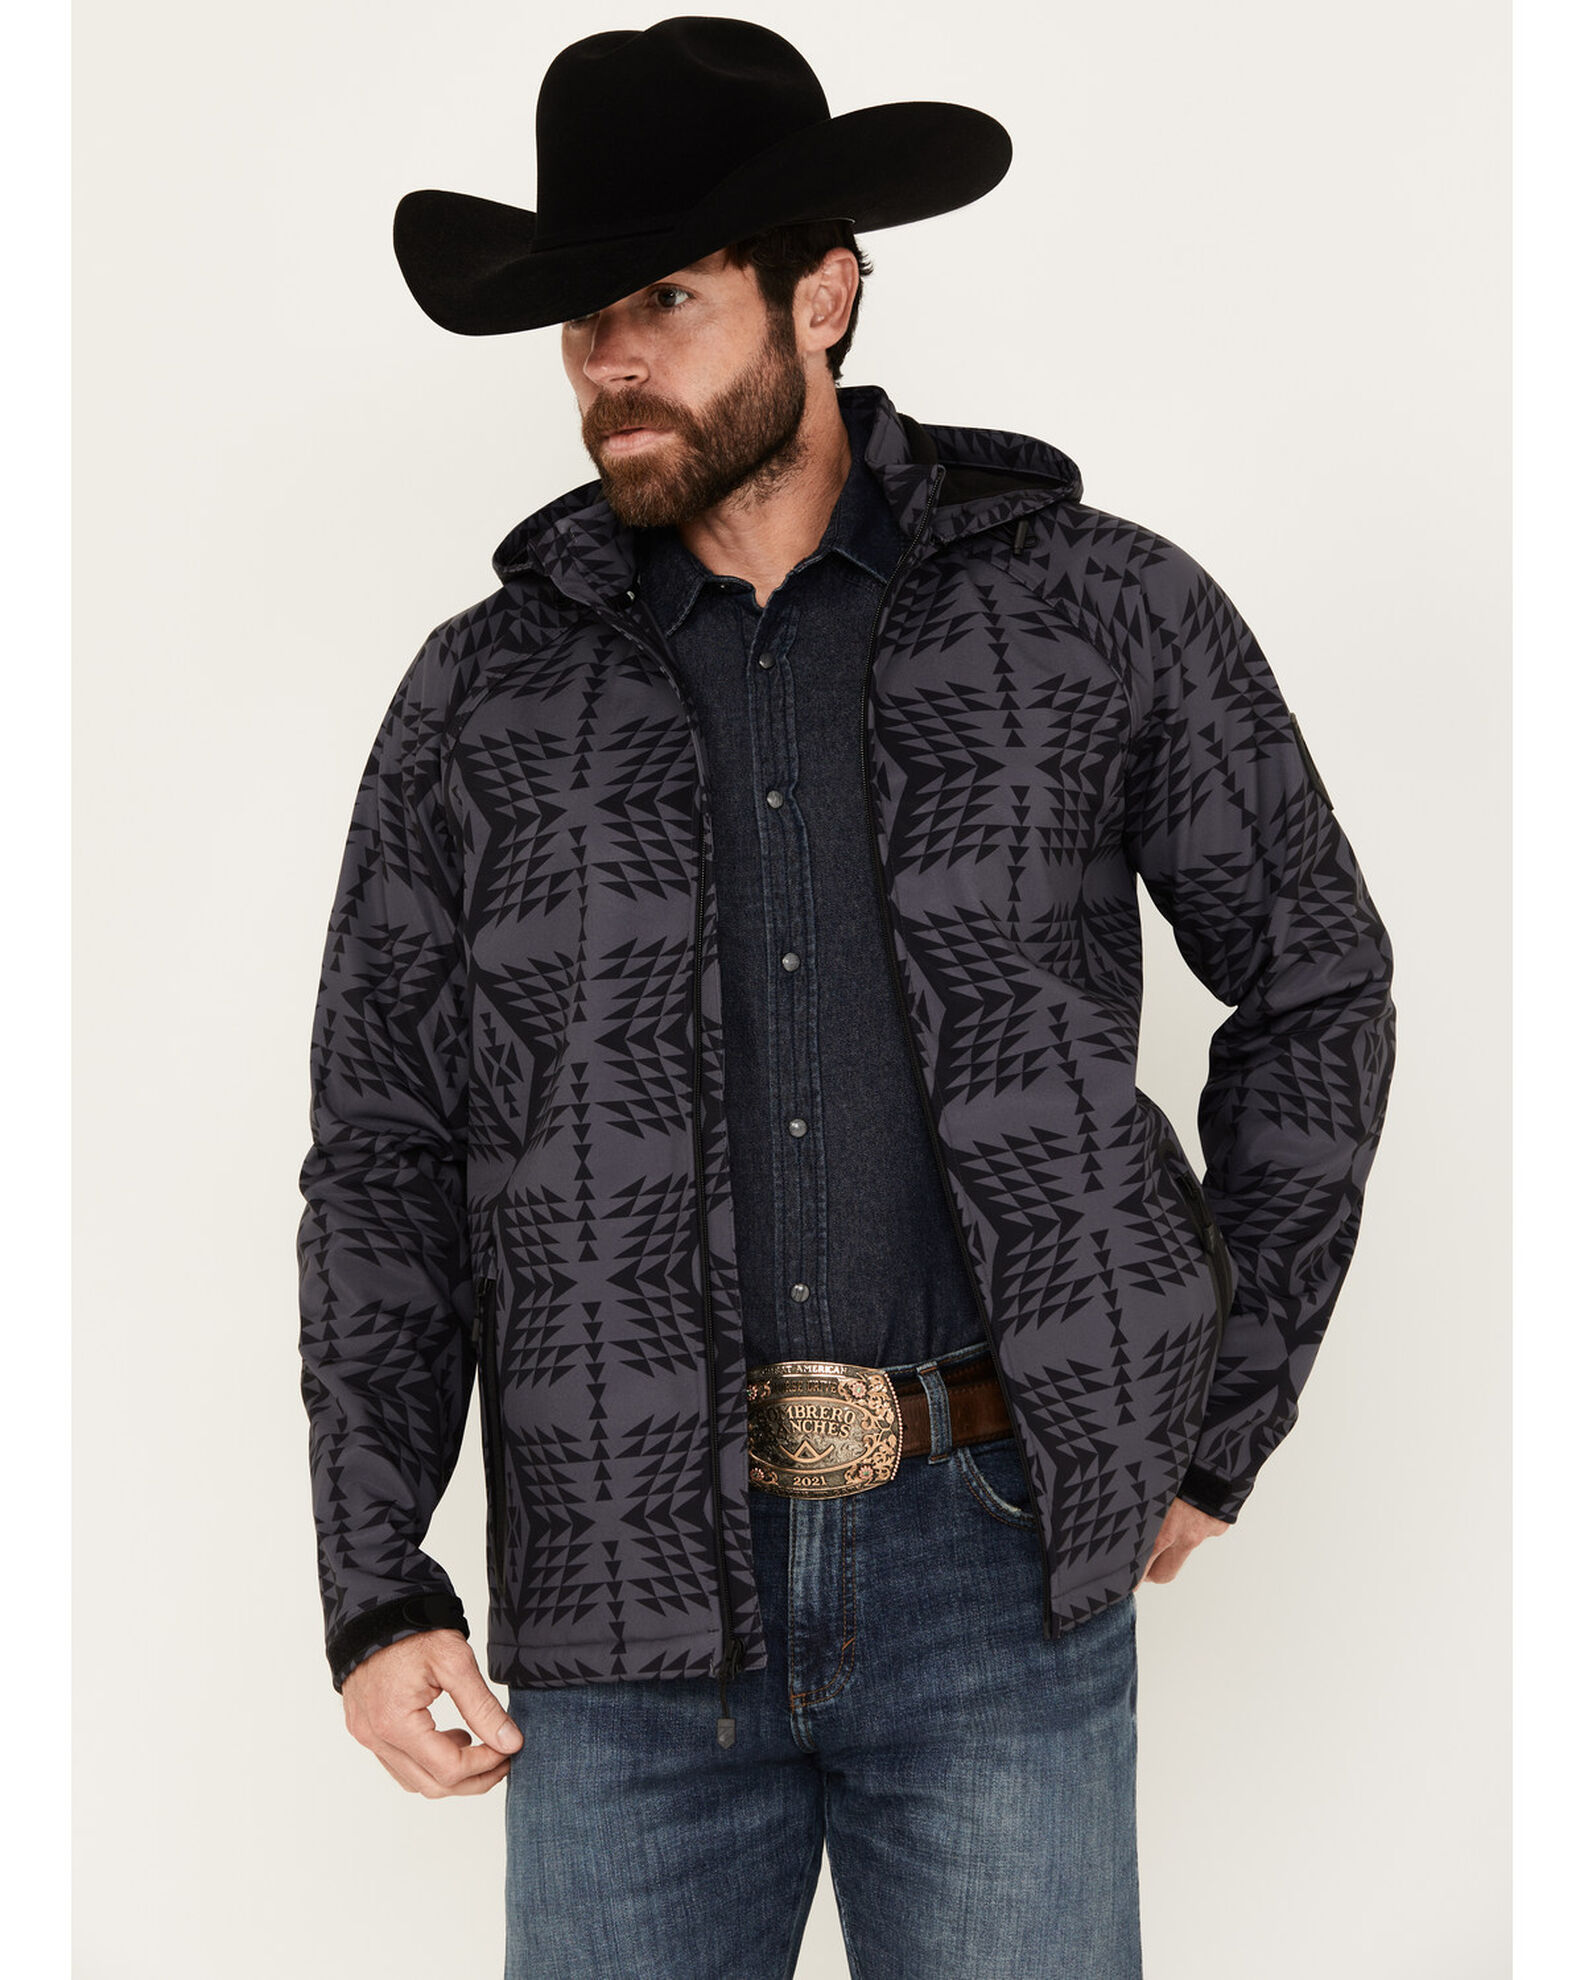 RANK 45® Men's Southwestern Print Softshell Jacket